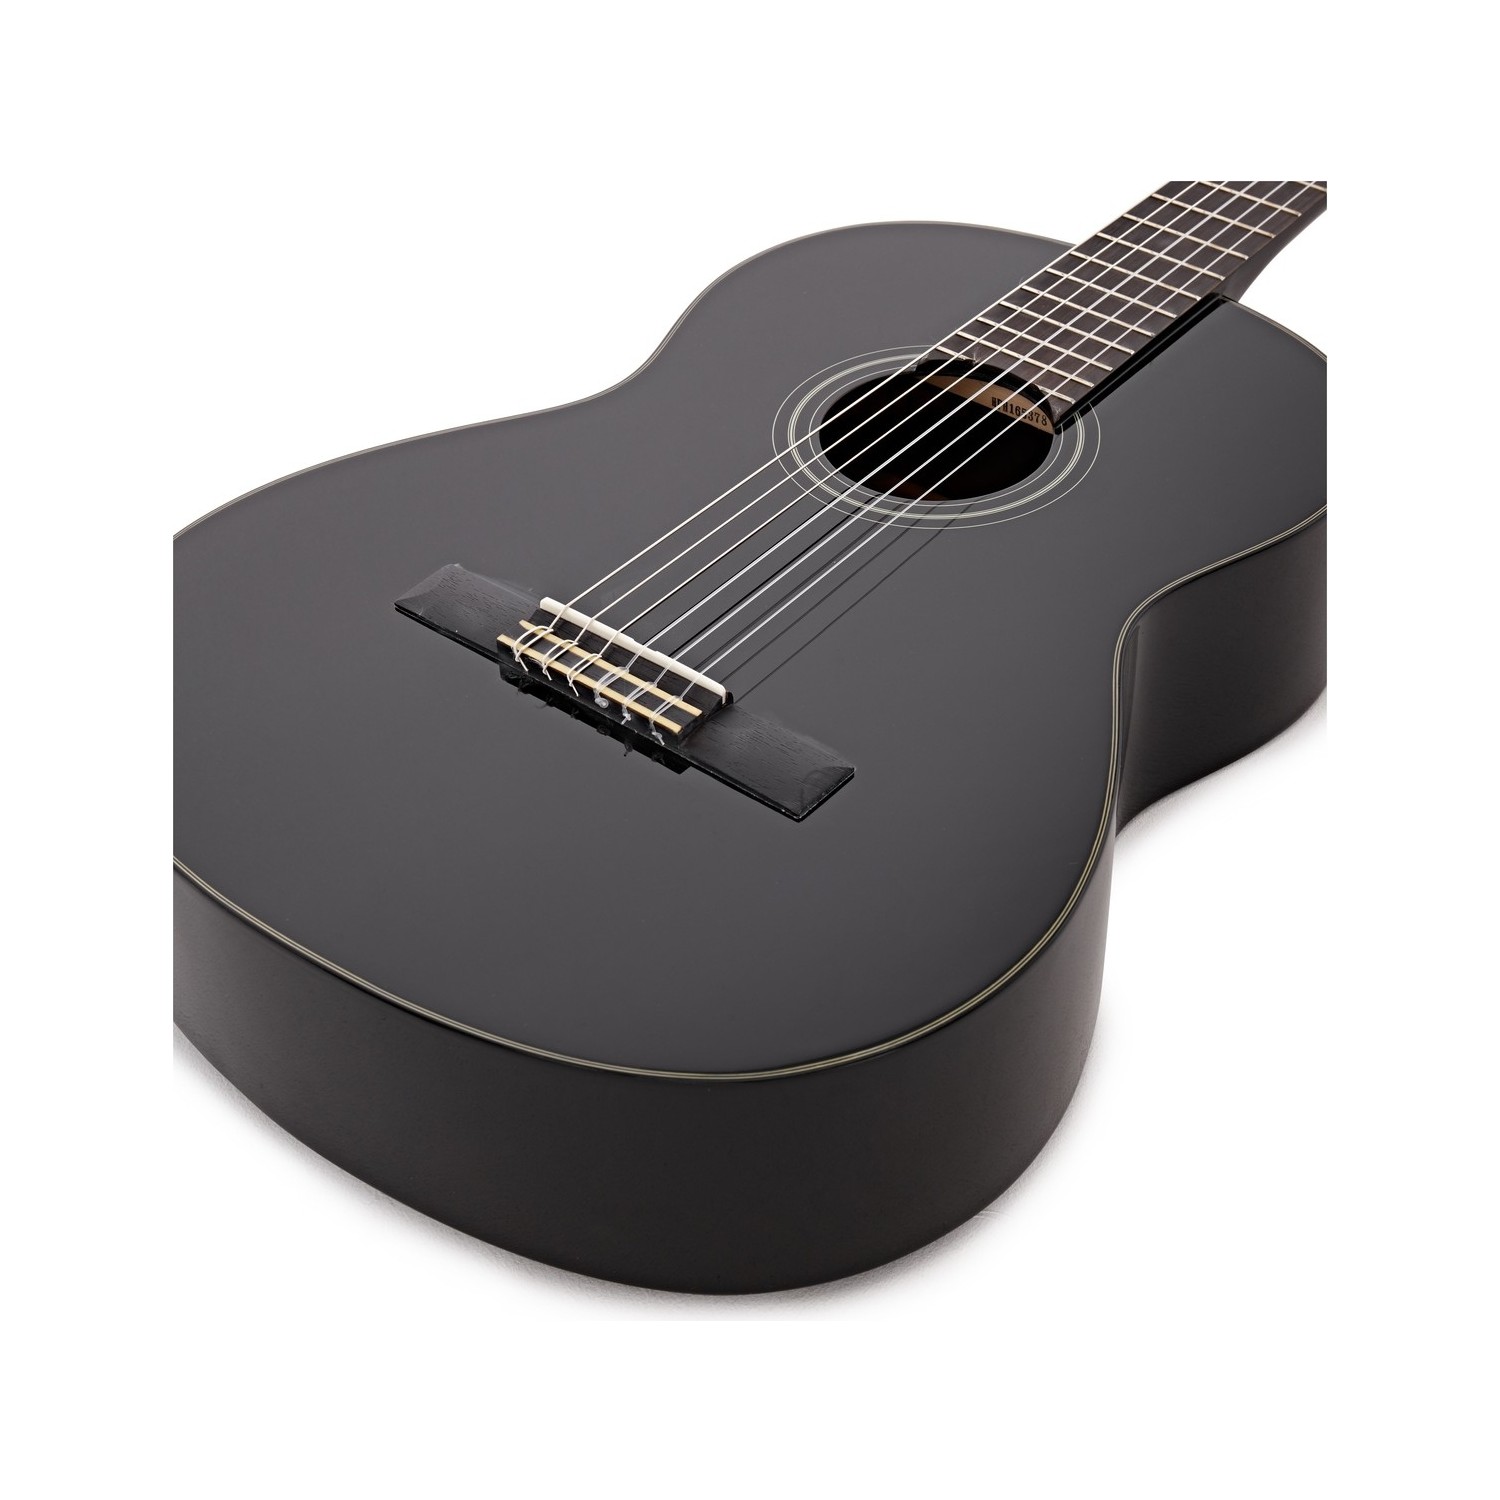 Yamaha C40 Klasik Gitar Siyah Fiyatı Taksit Seçenekleri